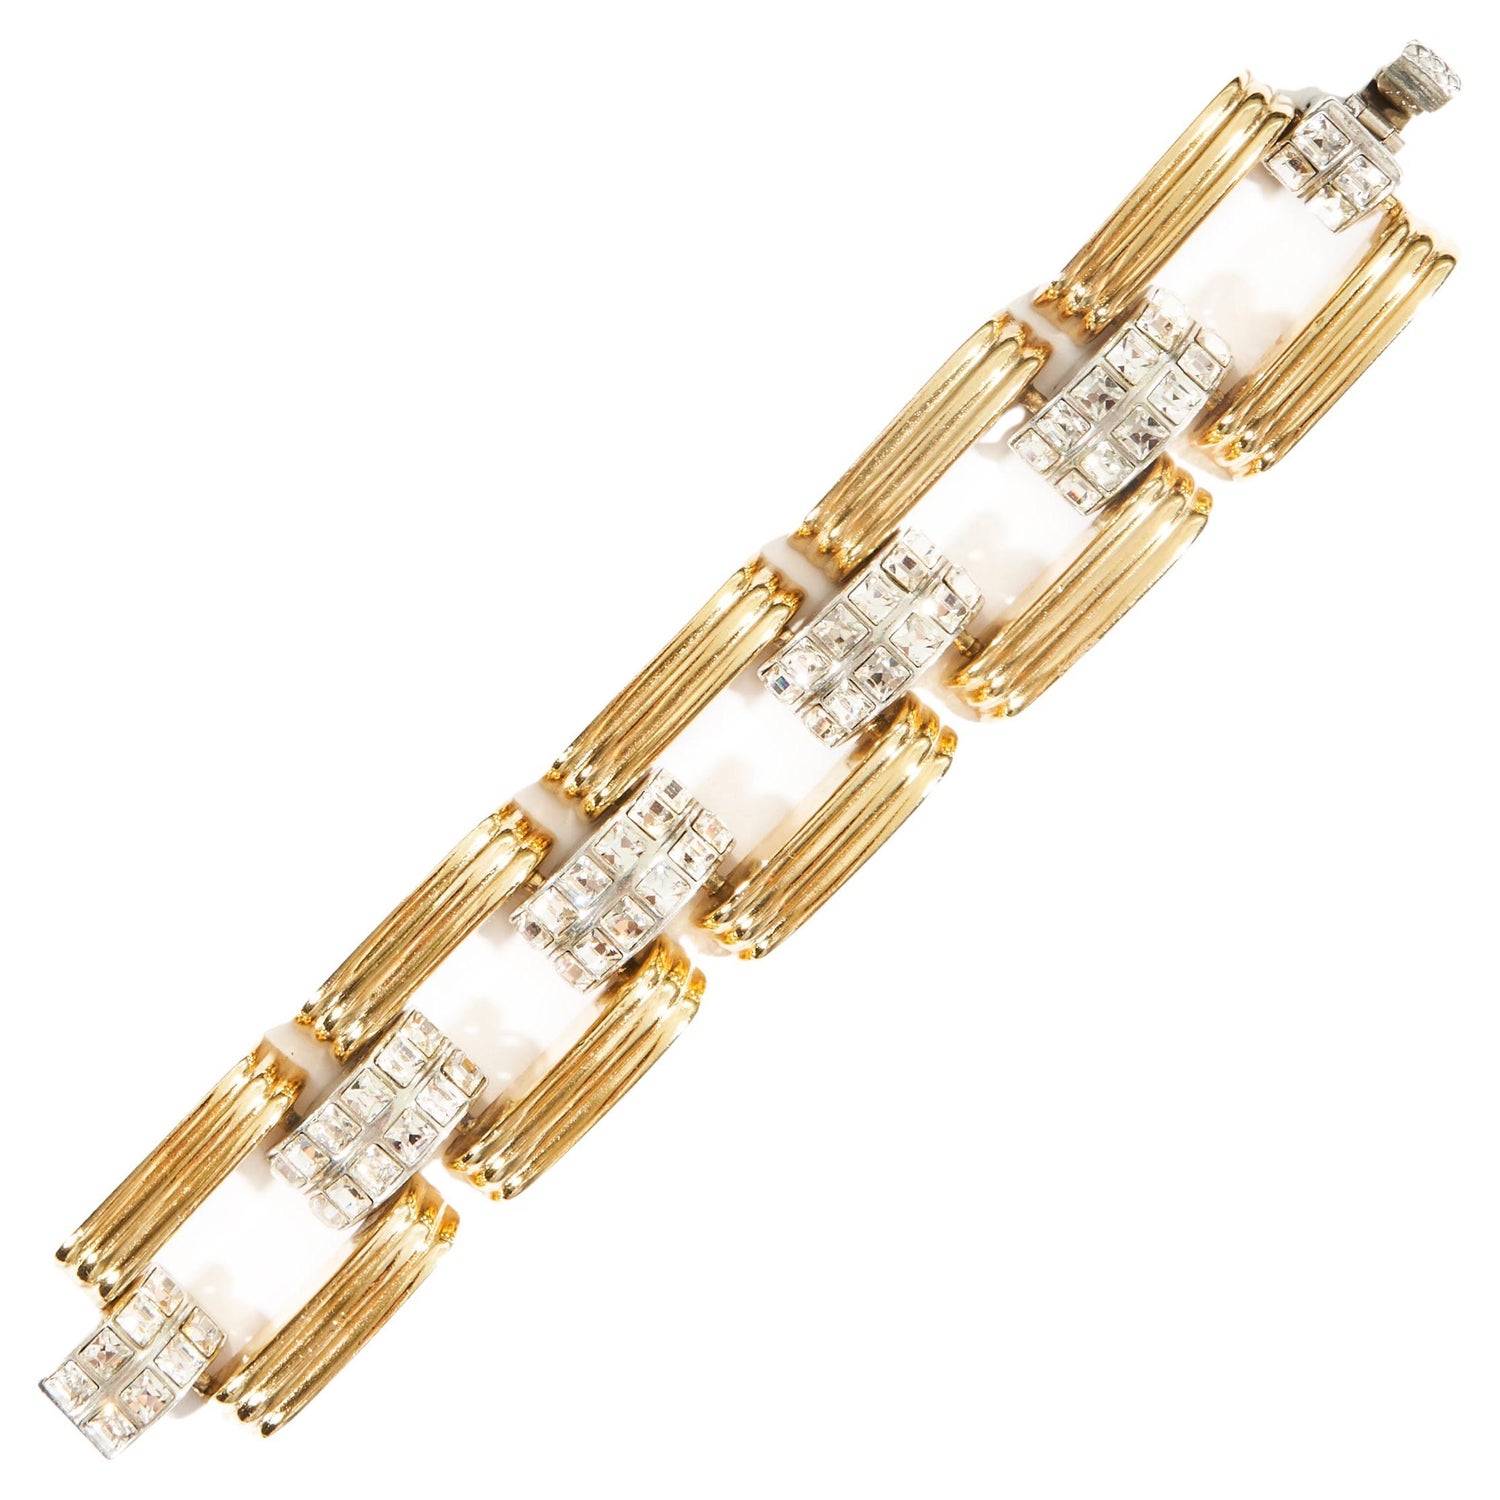 Rolled Gold Bracelet - 2 For Sale on 1stDibs